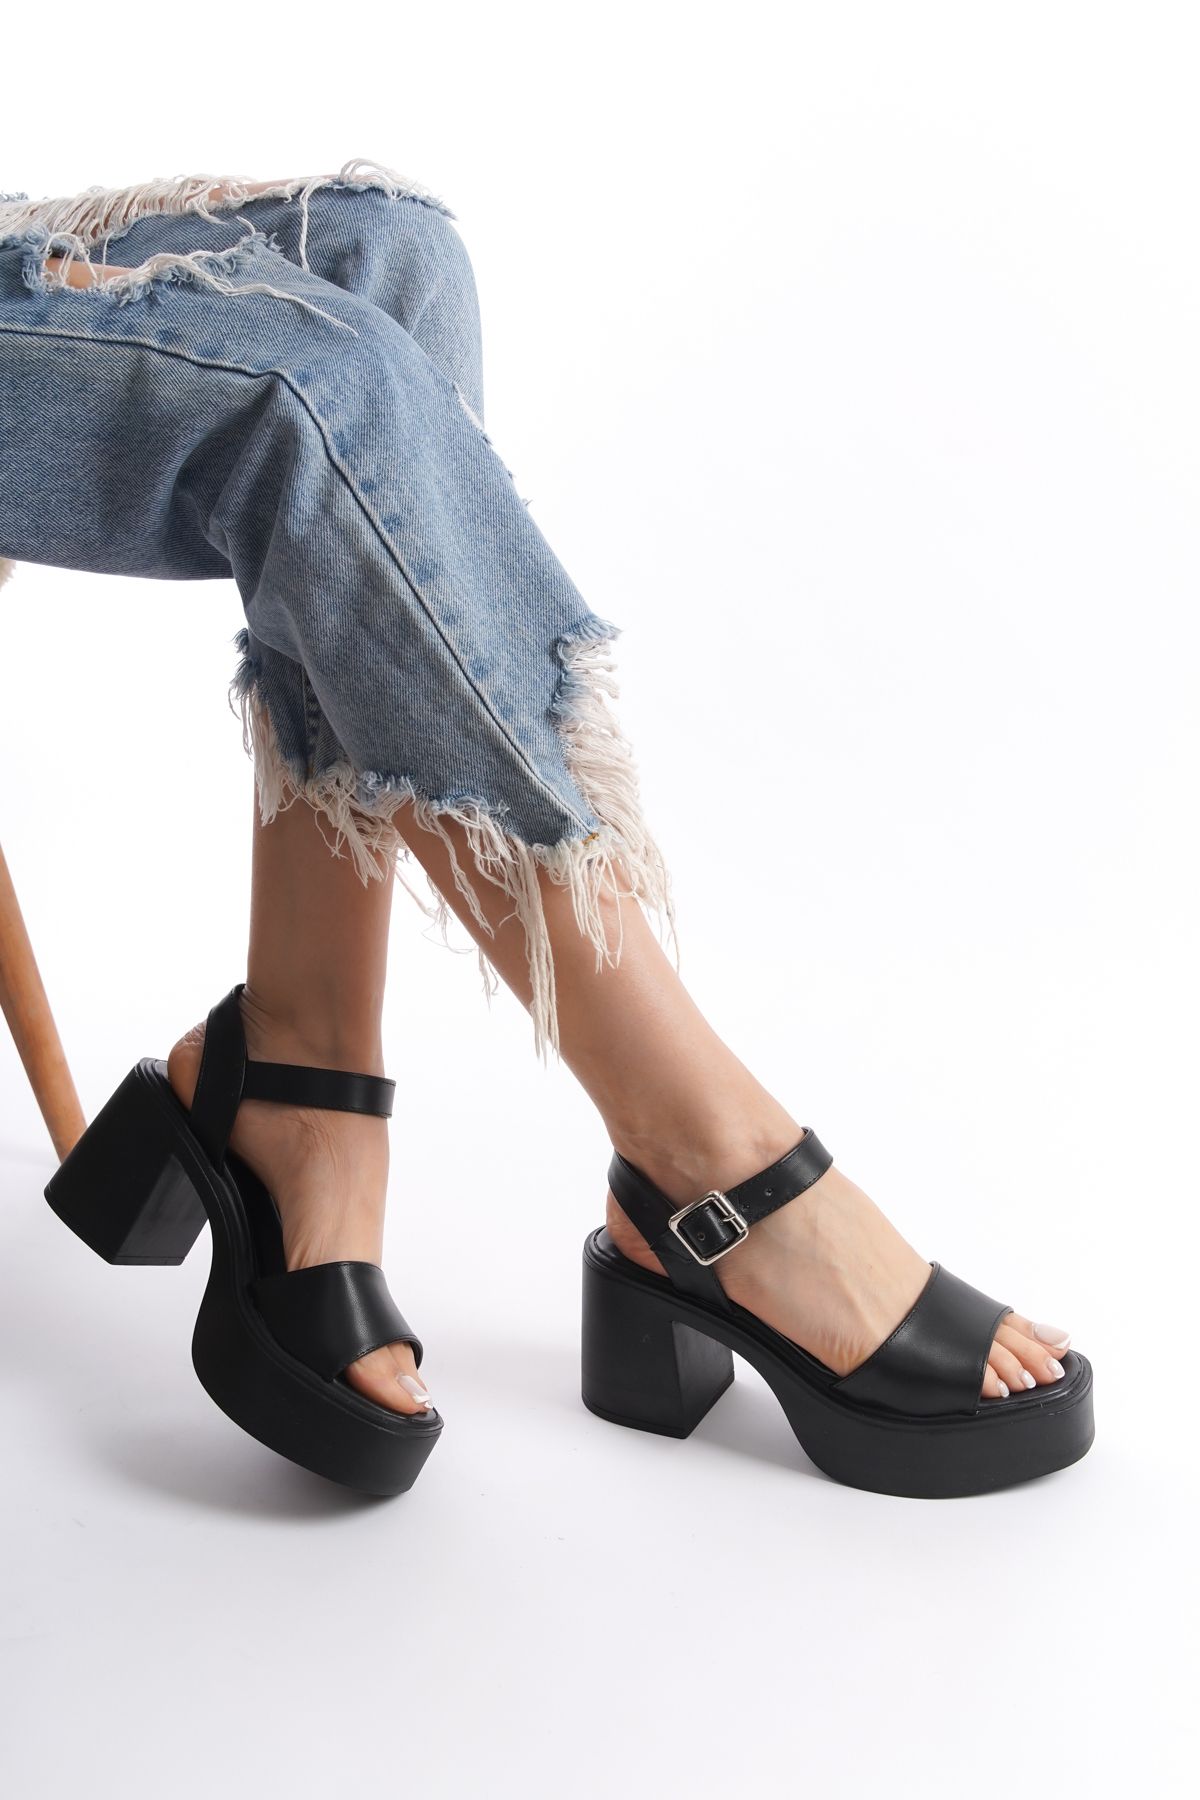 Limeo Siyah Yüksek Yandan Tokalı Tek Şeritli Önü Açık Cilt Yazlık Kadın Dolgu Taban Sandalet Ayakkabı